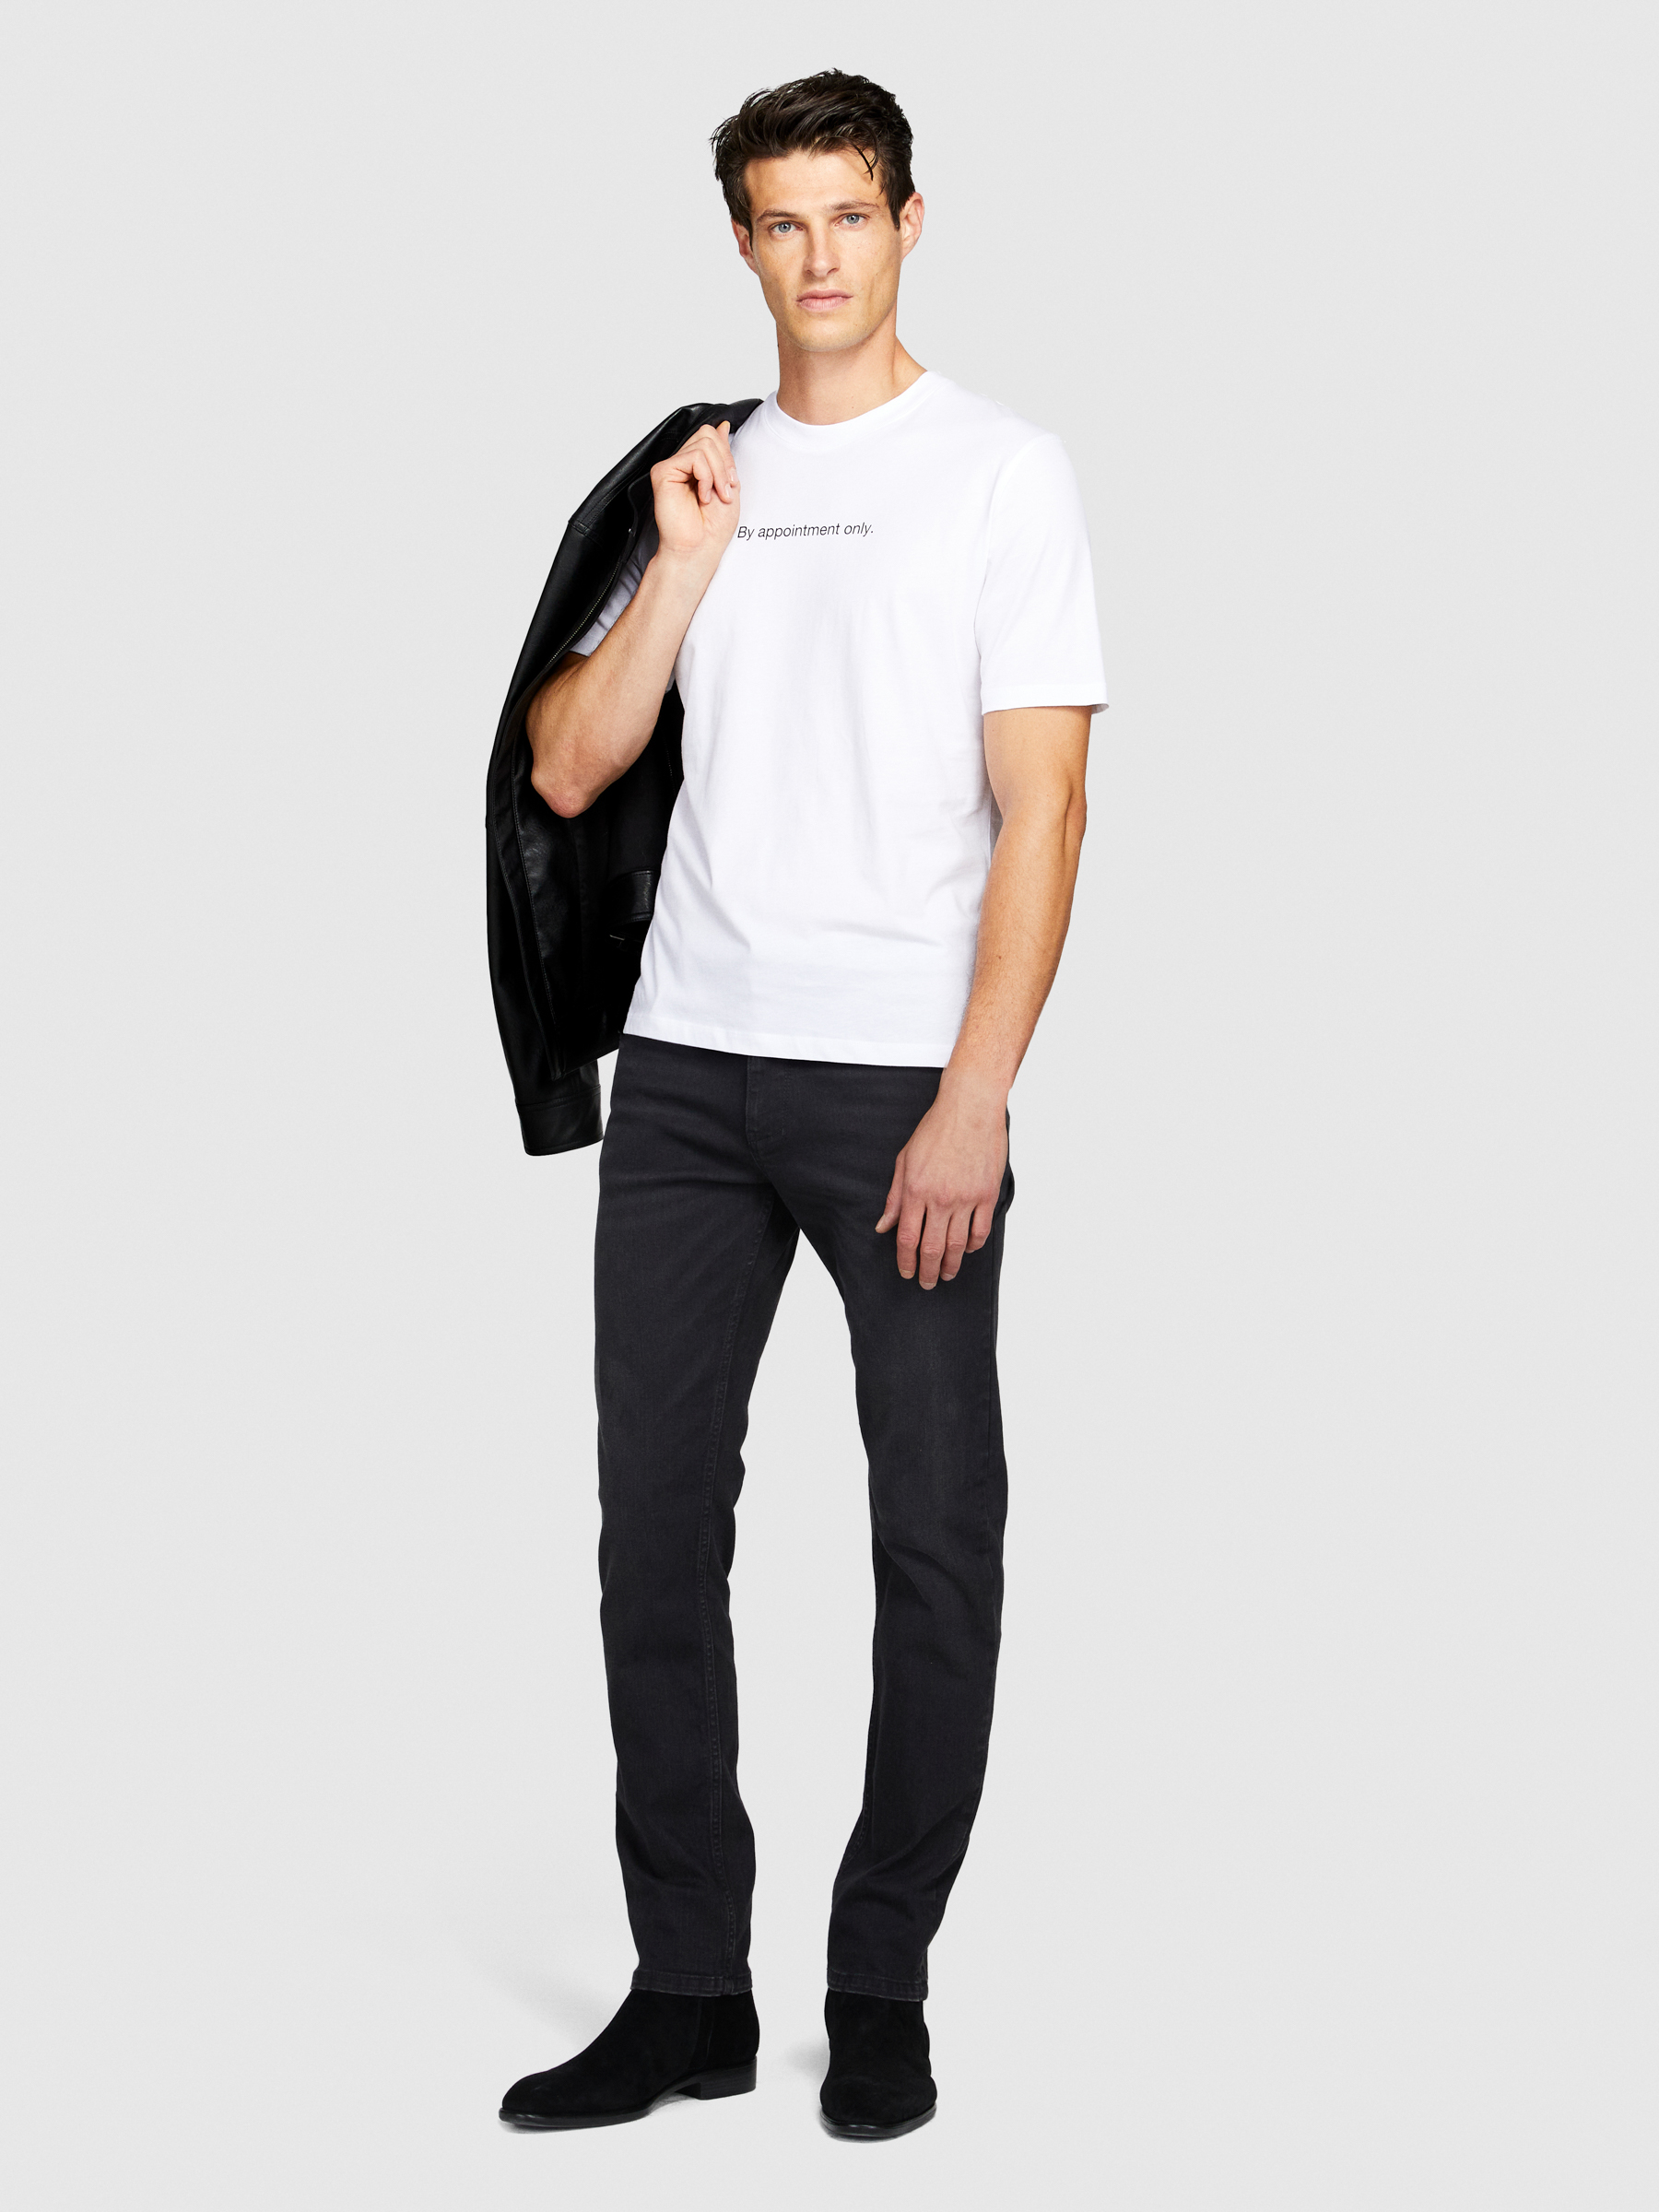 Sisley - T-shirt With Print, Man, White, Size: L